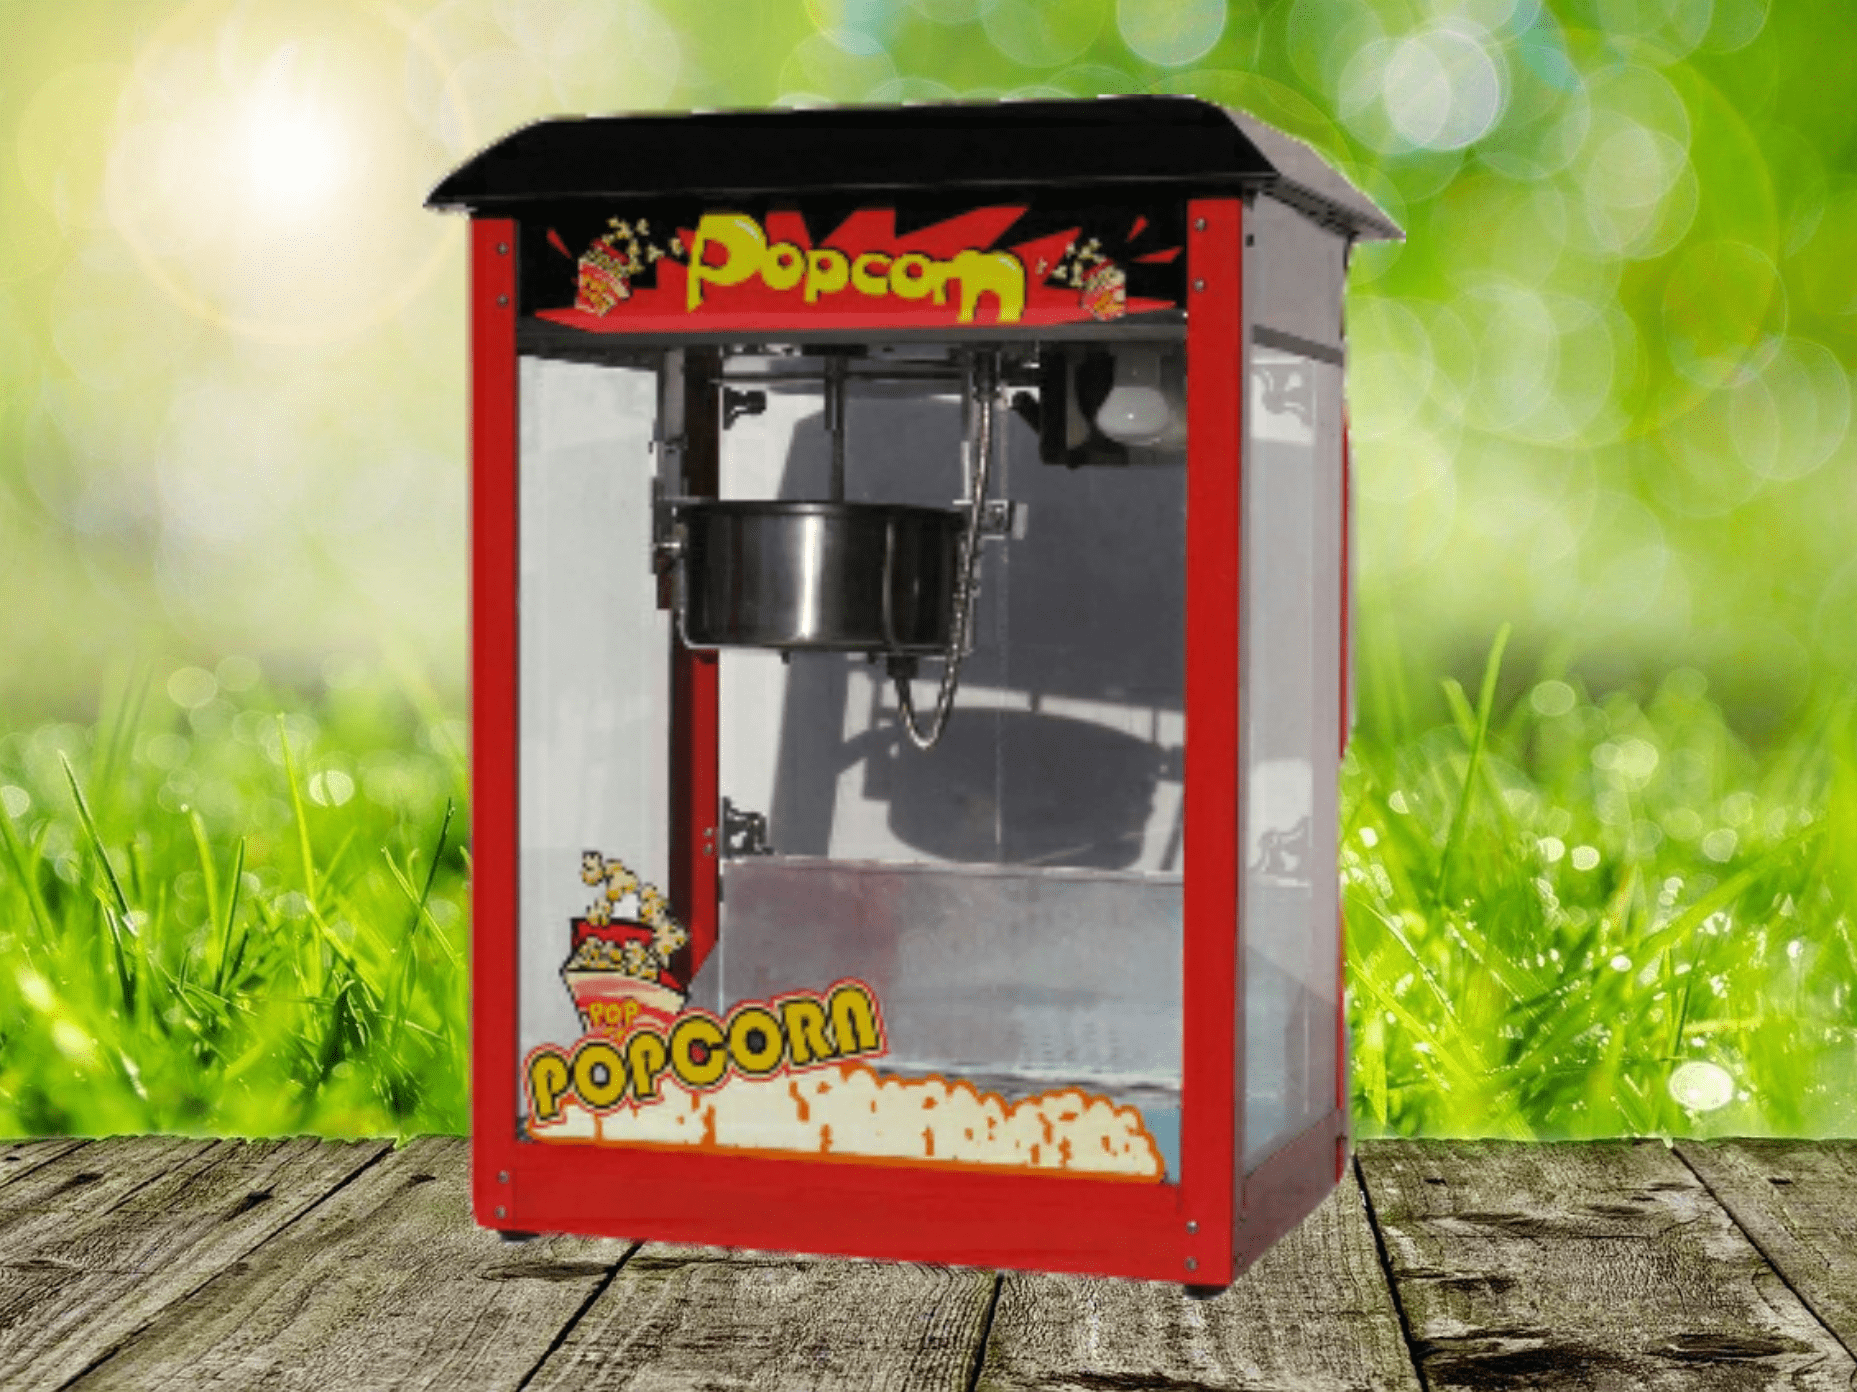 Popcornmaschine Popcorn selbst machen mieten Eventverleih Fun Food Spassfabrik Funfood Kindergeburtstag Bad Soden am Taunus, Schwalbach, Floersheim und Hattersheim